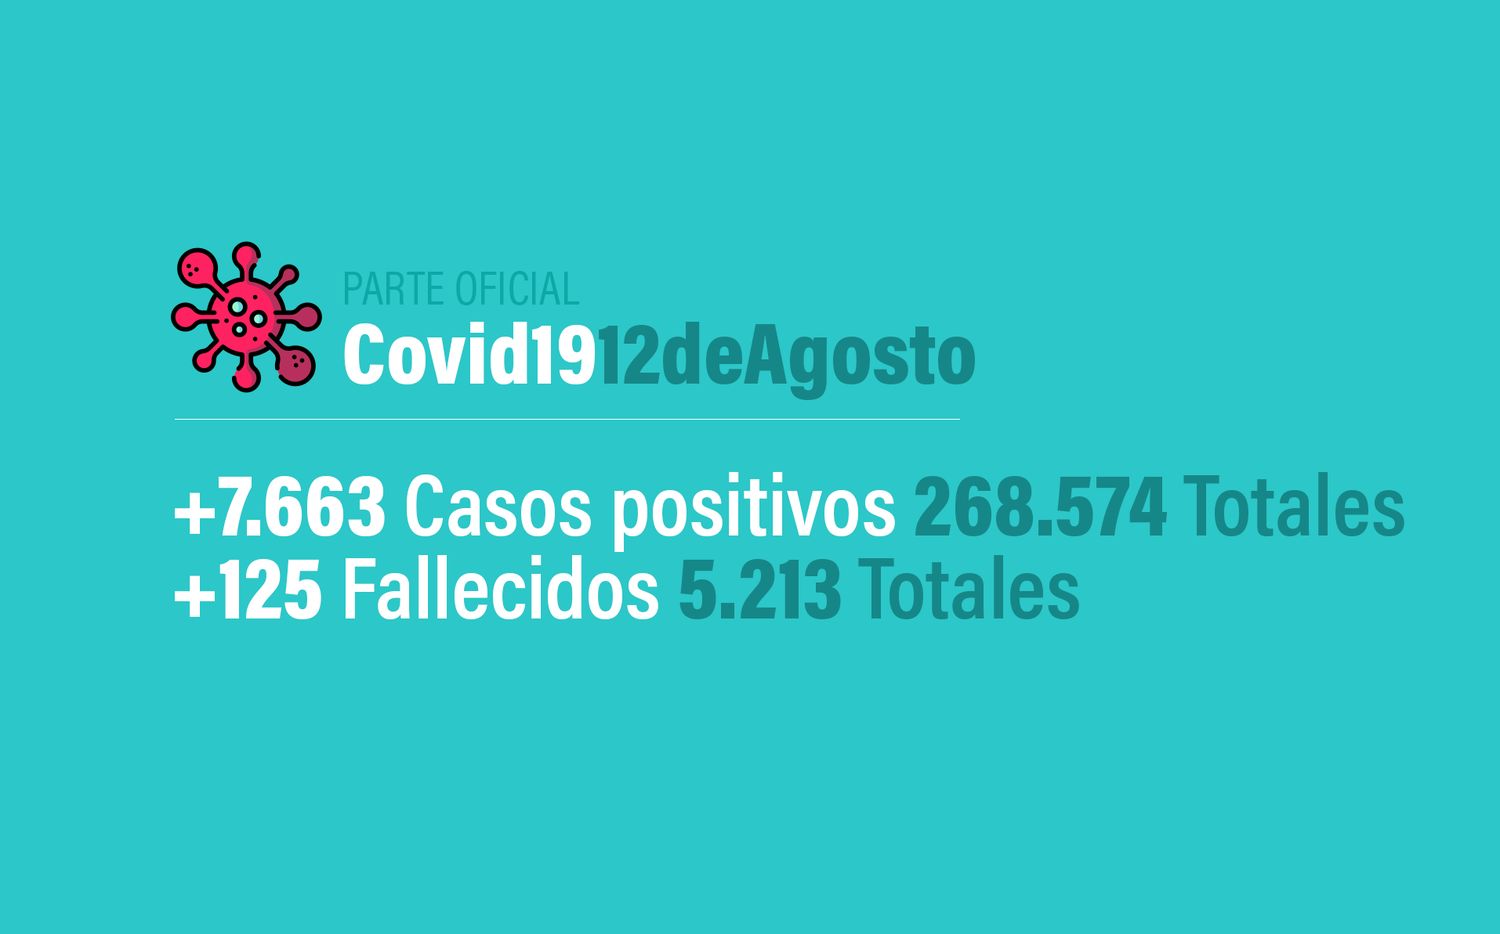 Coronavirus en Argentina: 7663 nuevos casos, 268574 confirmados y 5213 muertes, al 12 de agosto